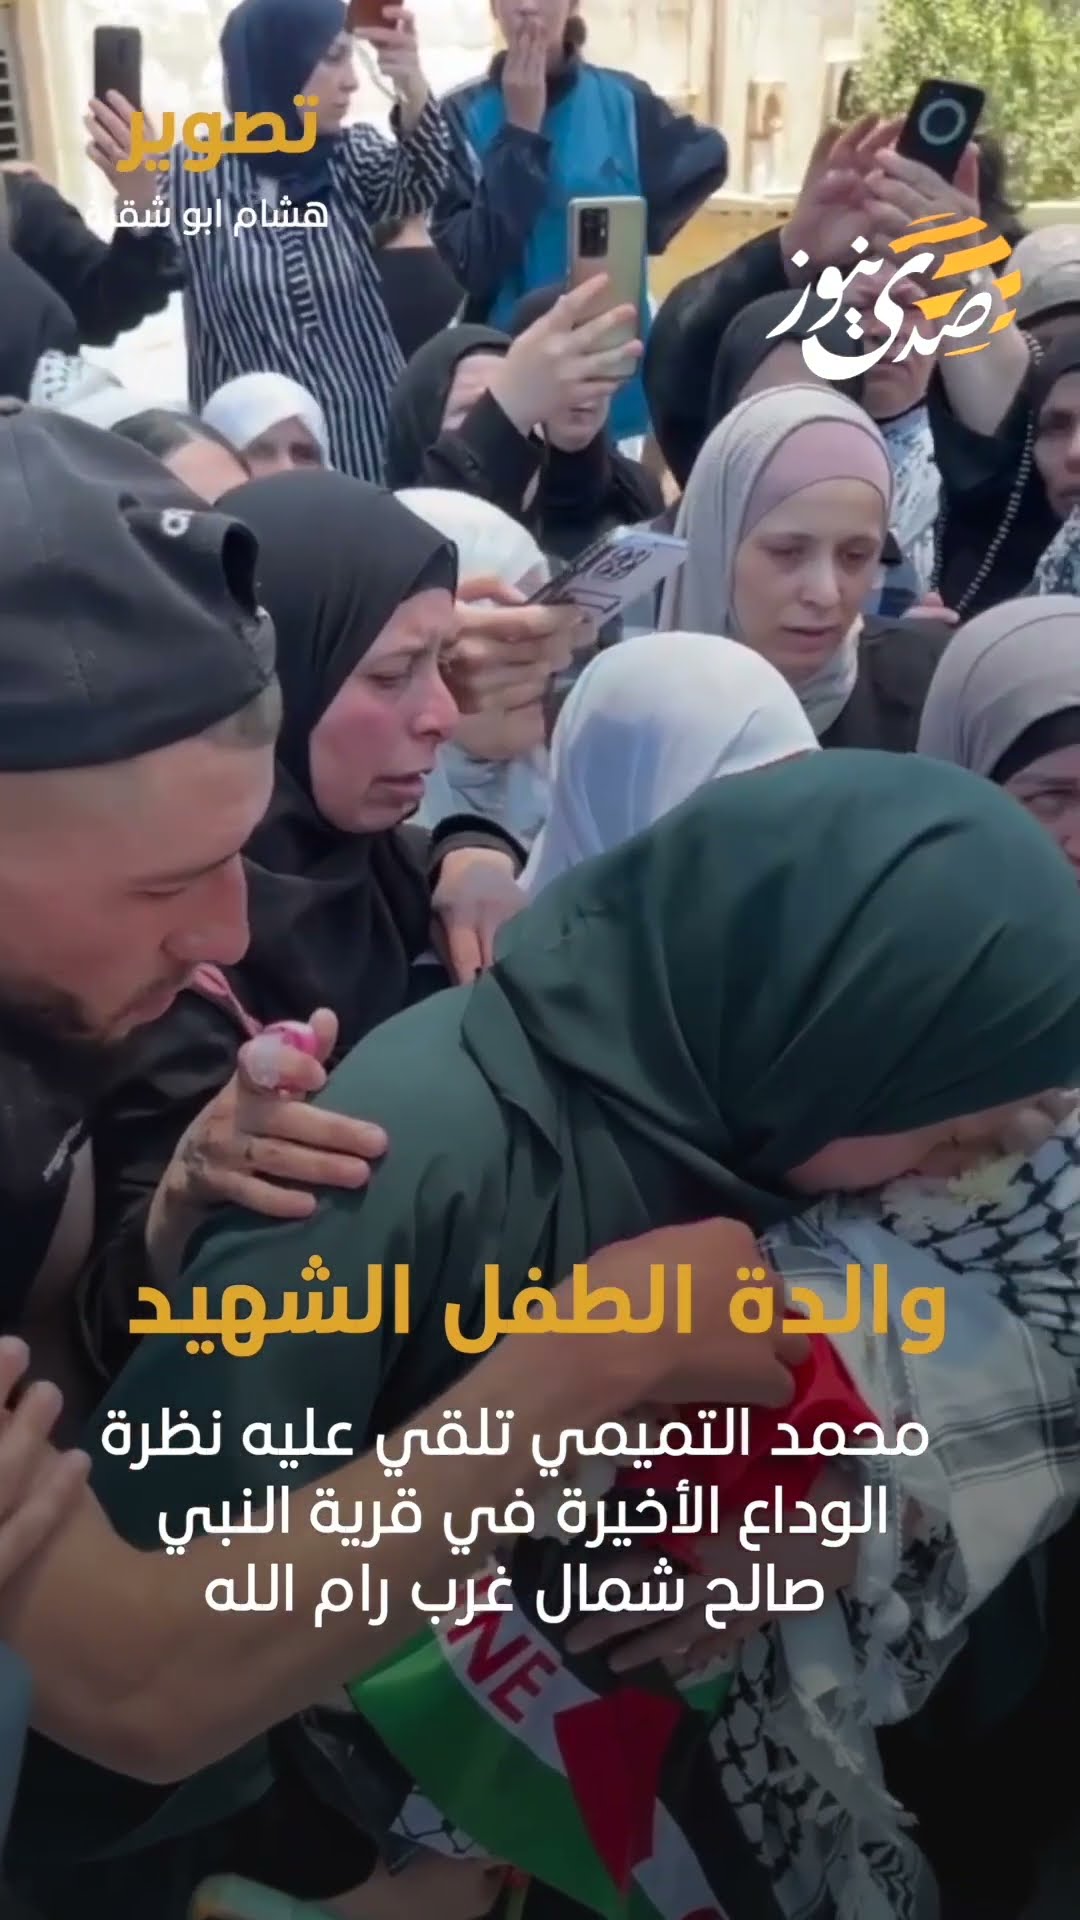 والدة الطفل الشهيد محمد التميمي تلقي عليه نظرة الوداع الأخيرة في قرية النبي صالح شمال غرب رام الله